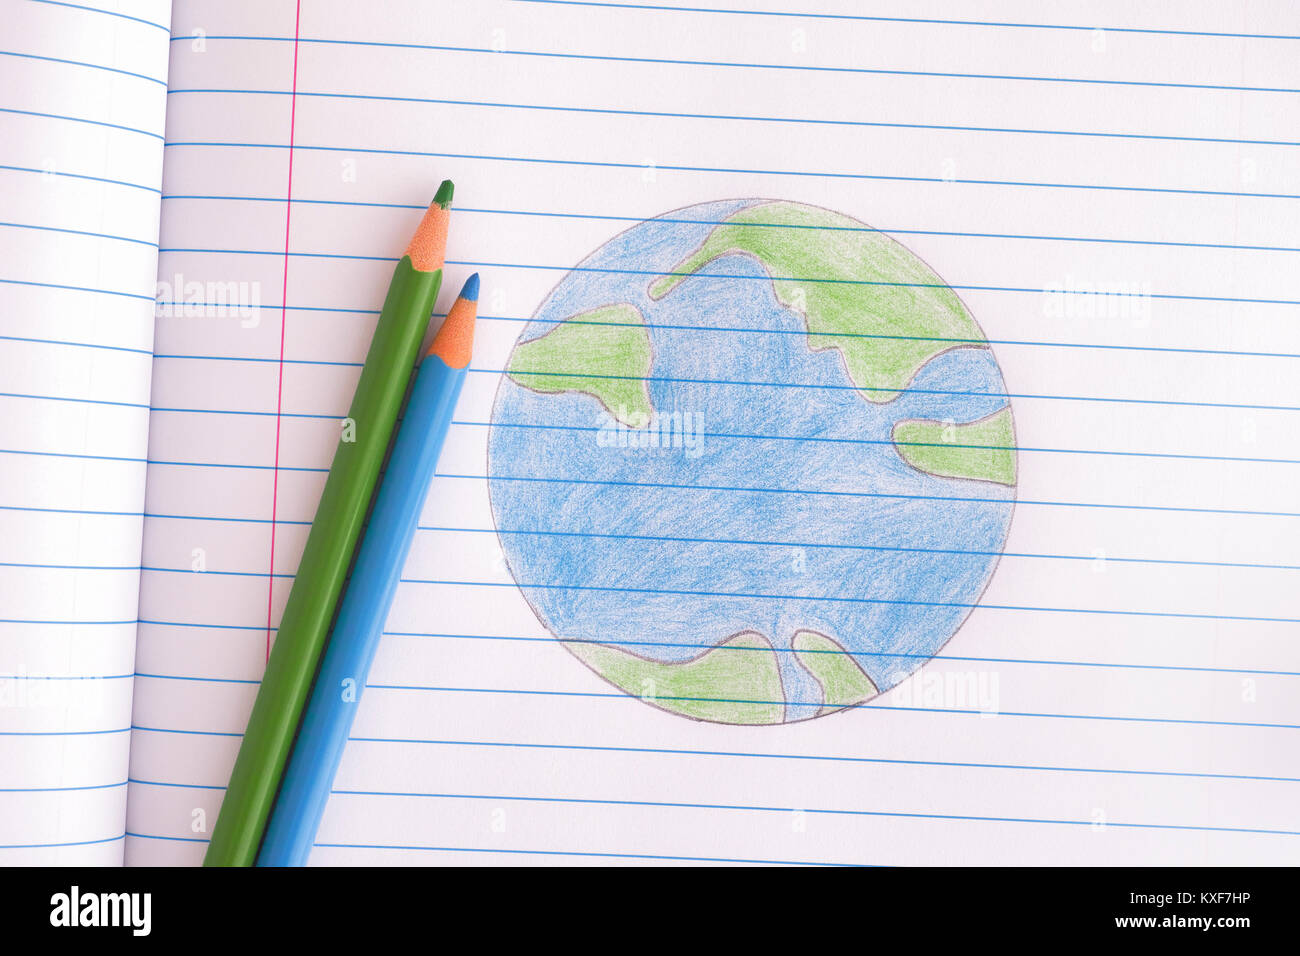 Planet Erde Gezeichnet Mit Bleistift Auf Notebook Blatt Close Up Stockfotografie Alamy